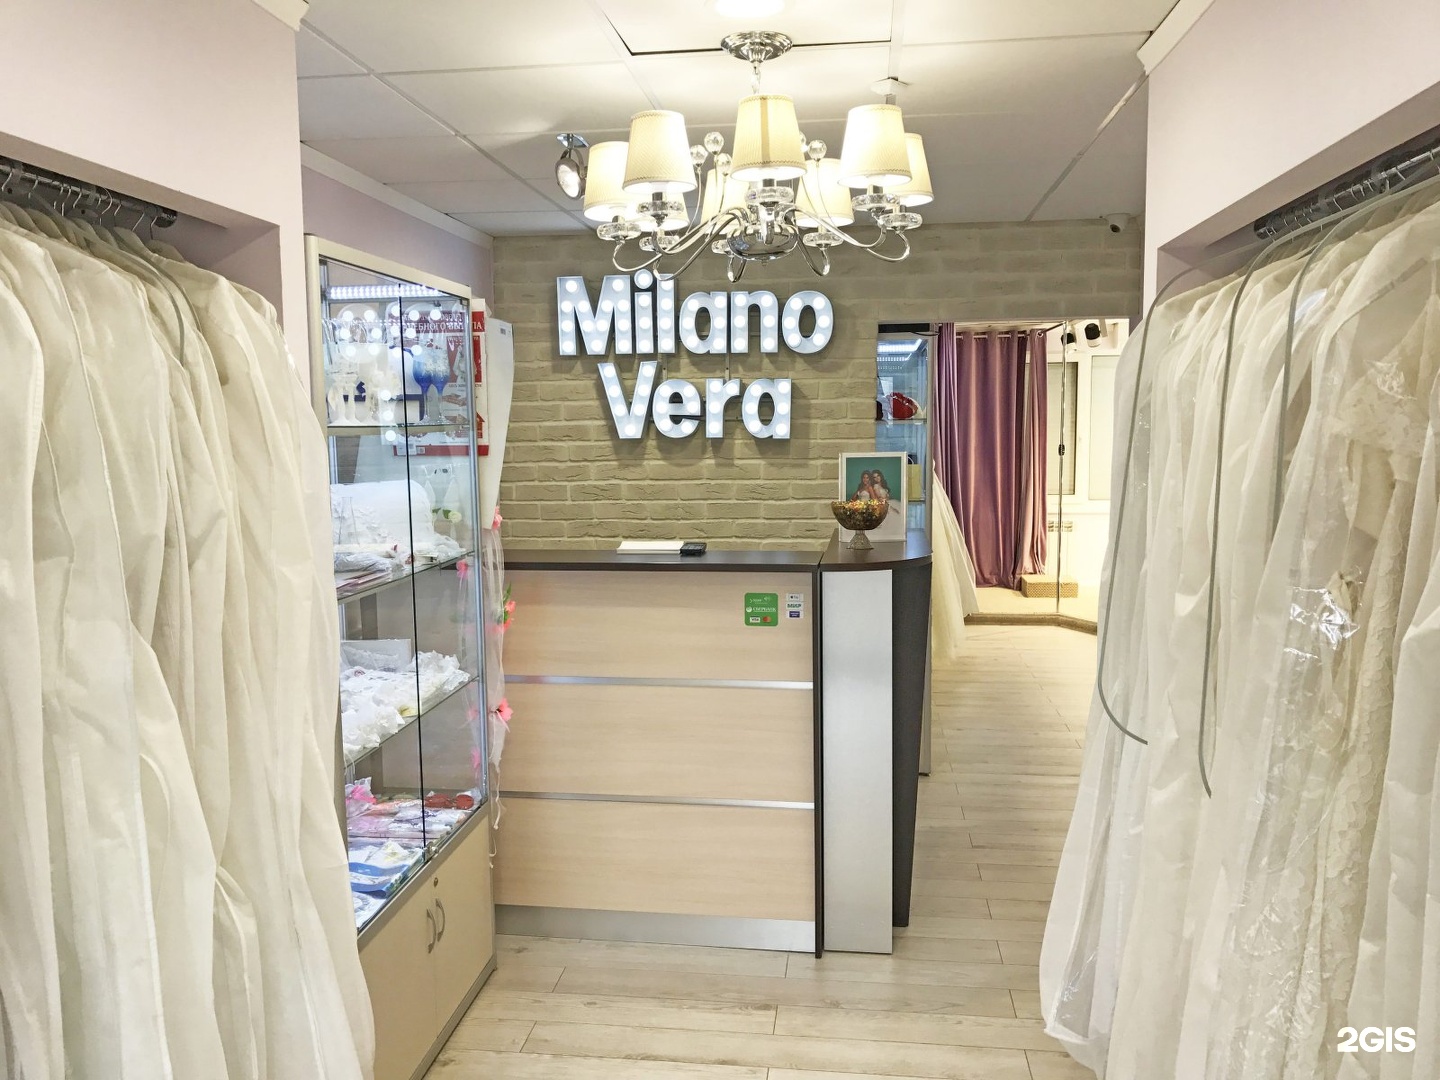 Milano Vera свадебный салон. Энгельса 115 магазины одежды. Татищева 4 б салон Милано стайла.